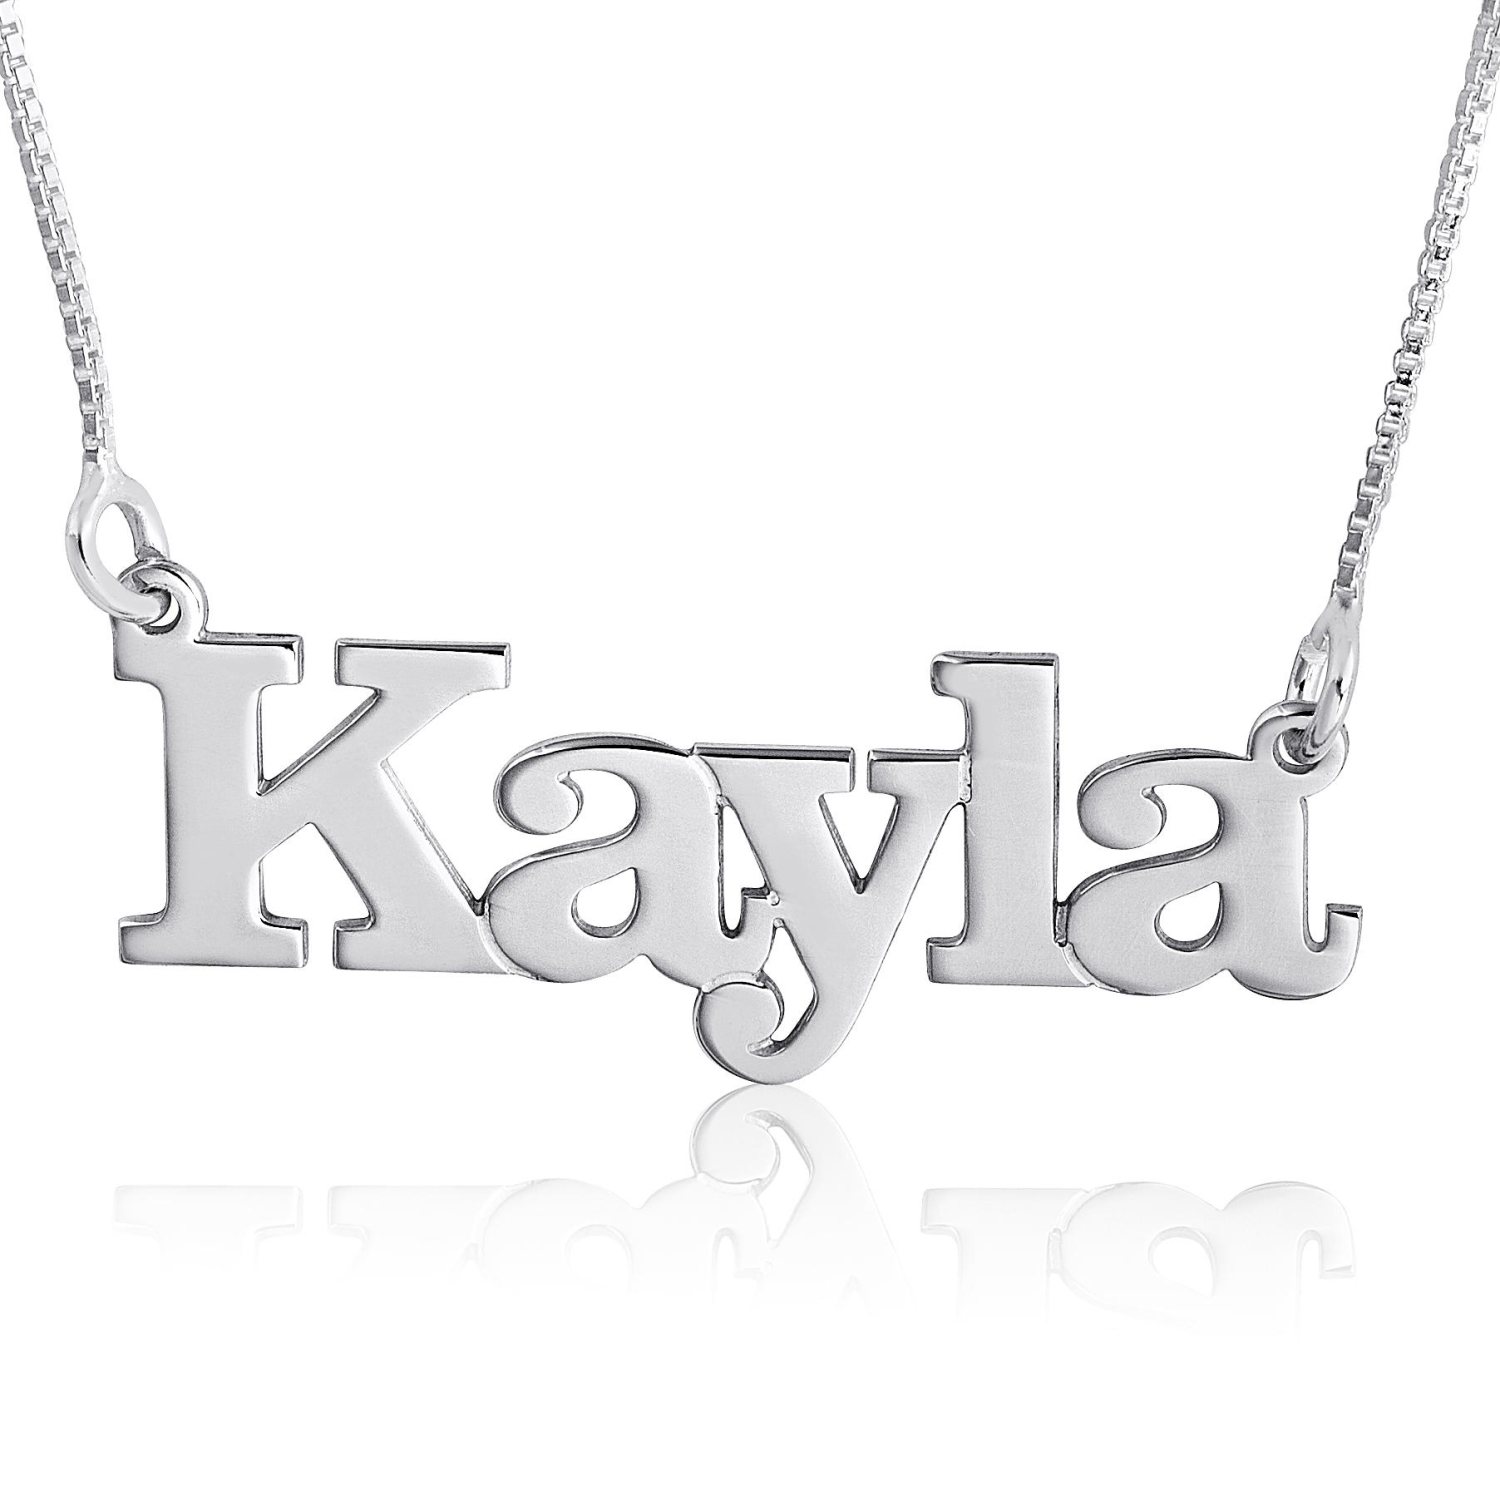 Kayla Print Style, Sterling Silver - 1